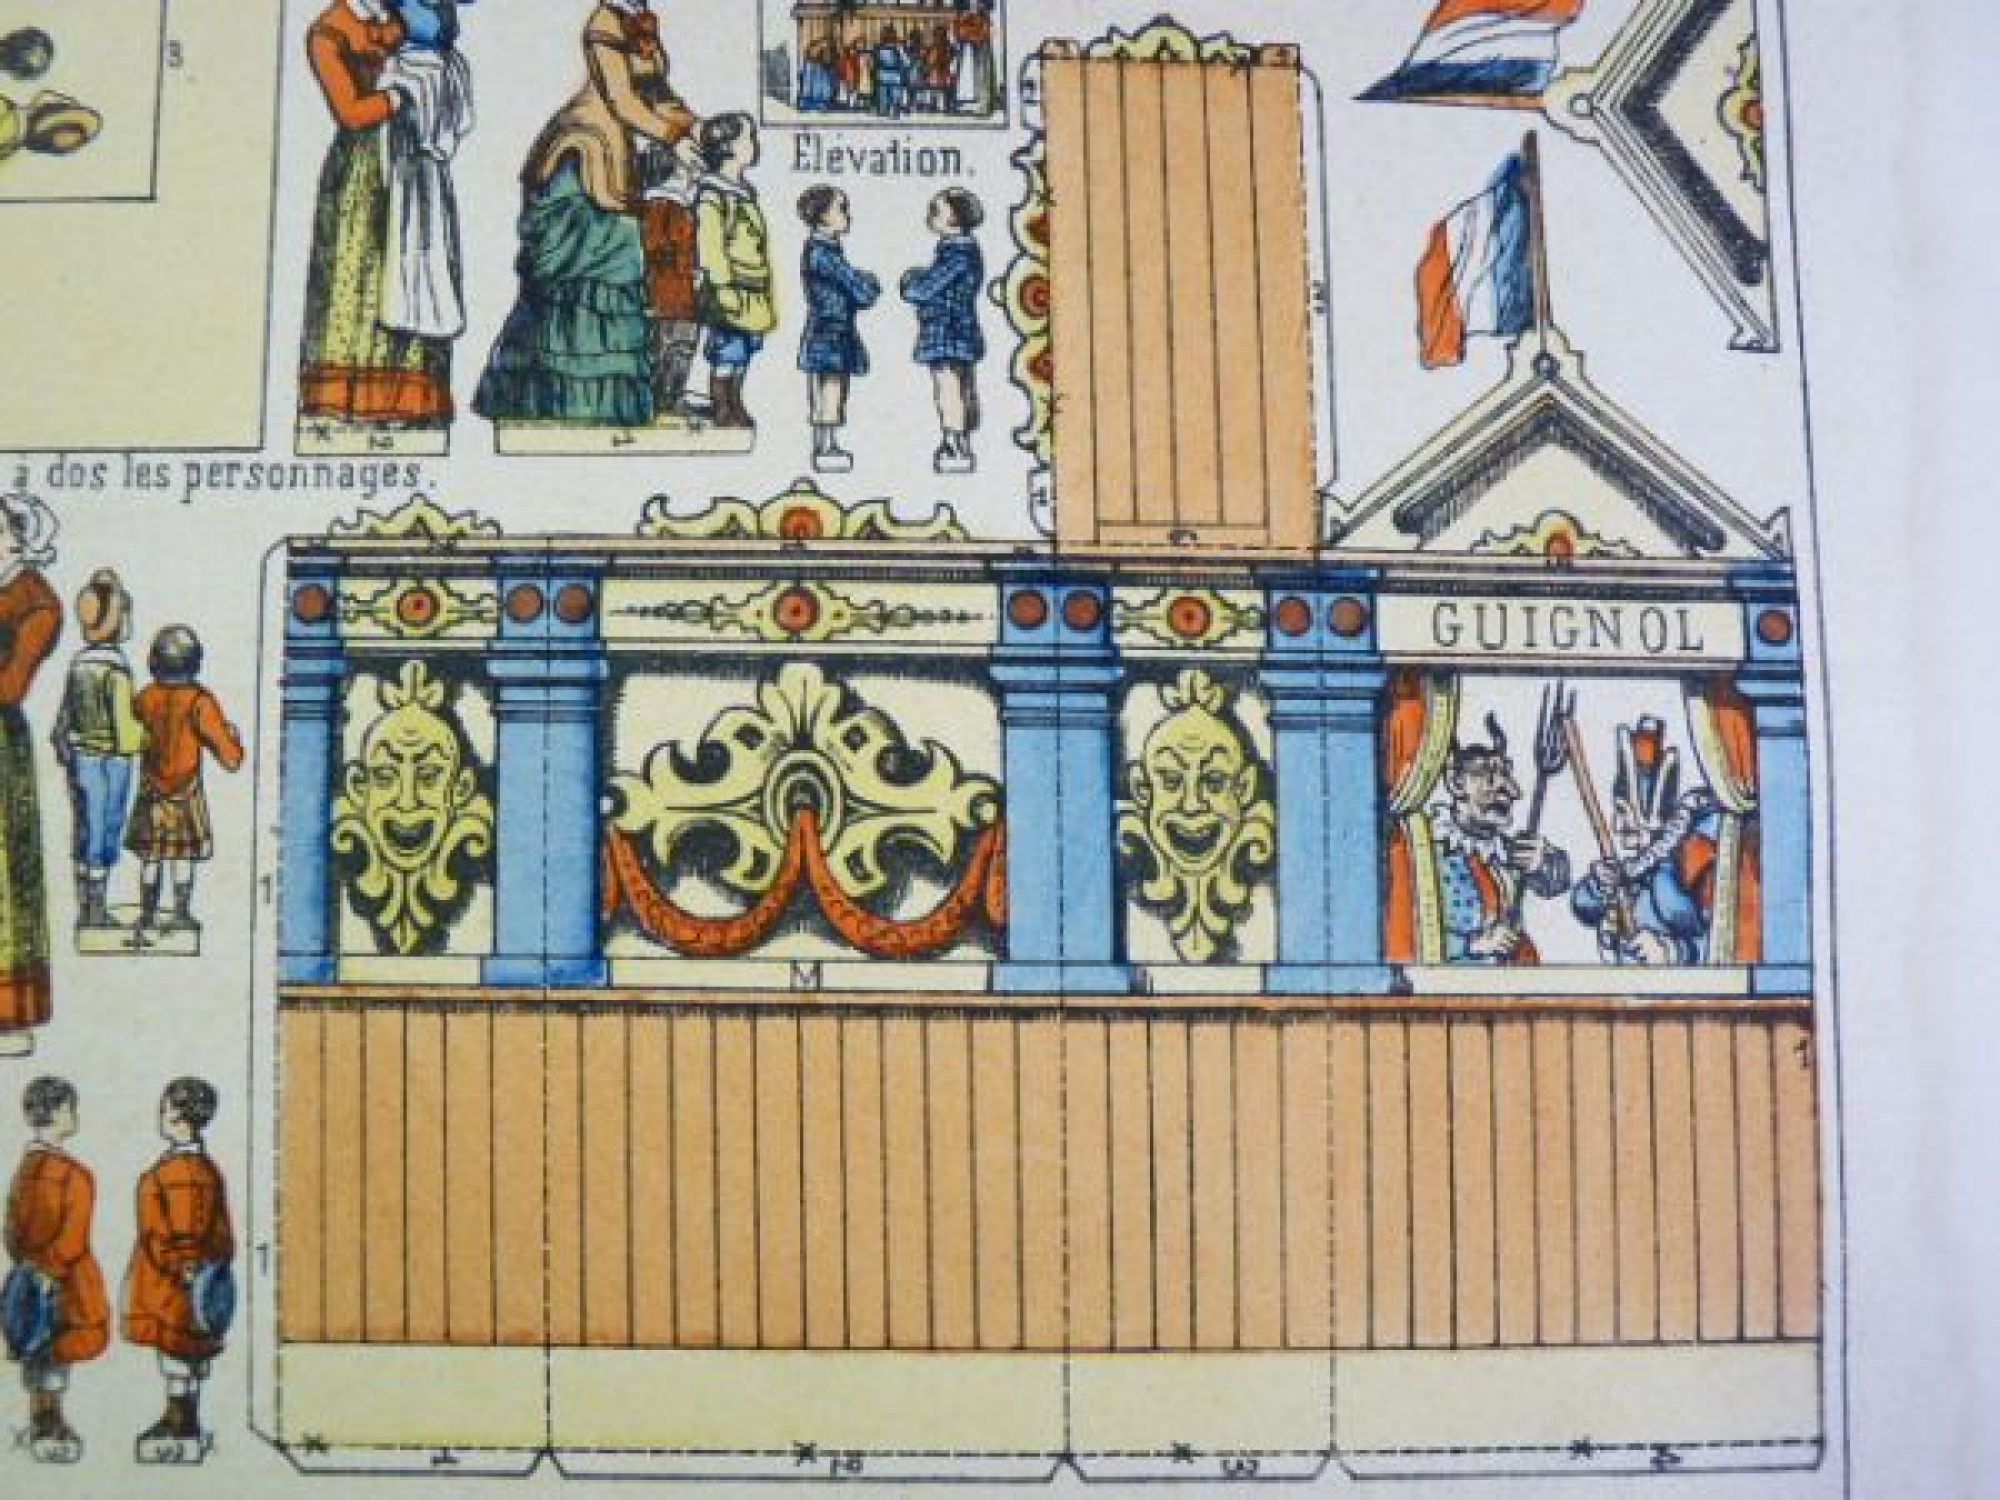 Imagerie D’Epinal No 1335 Château de Brissac Petites Constructions paper model 